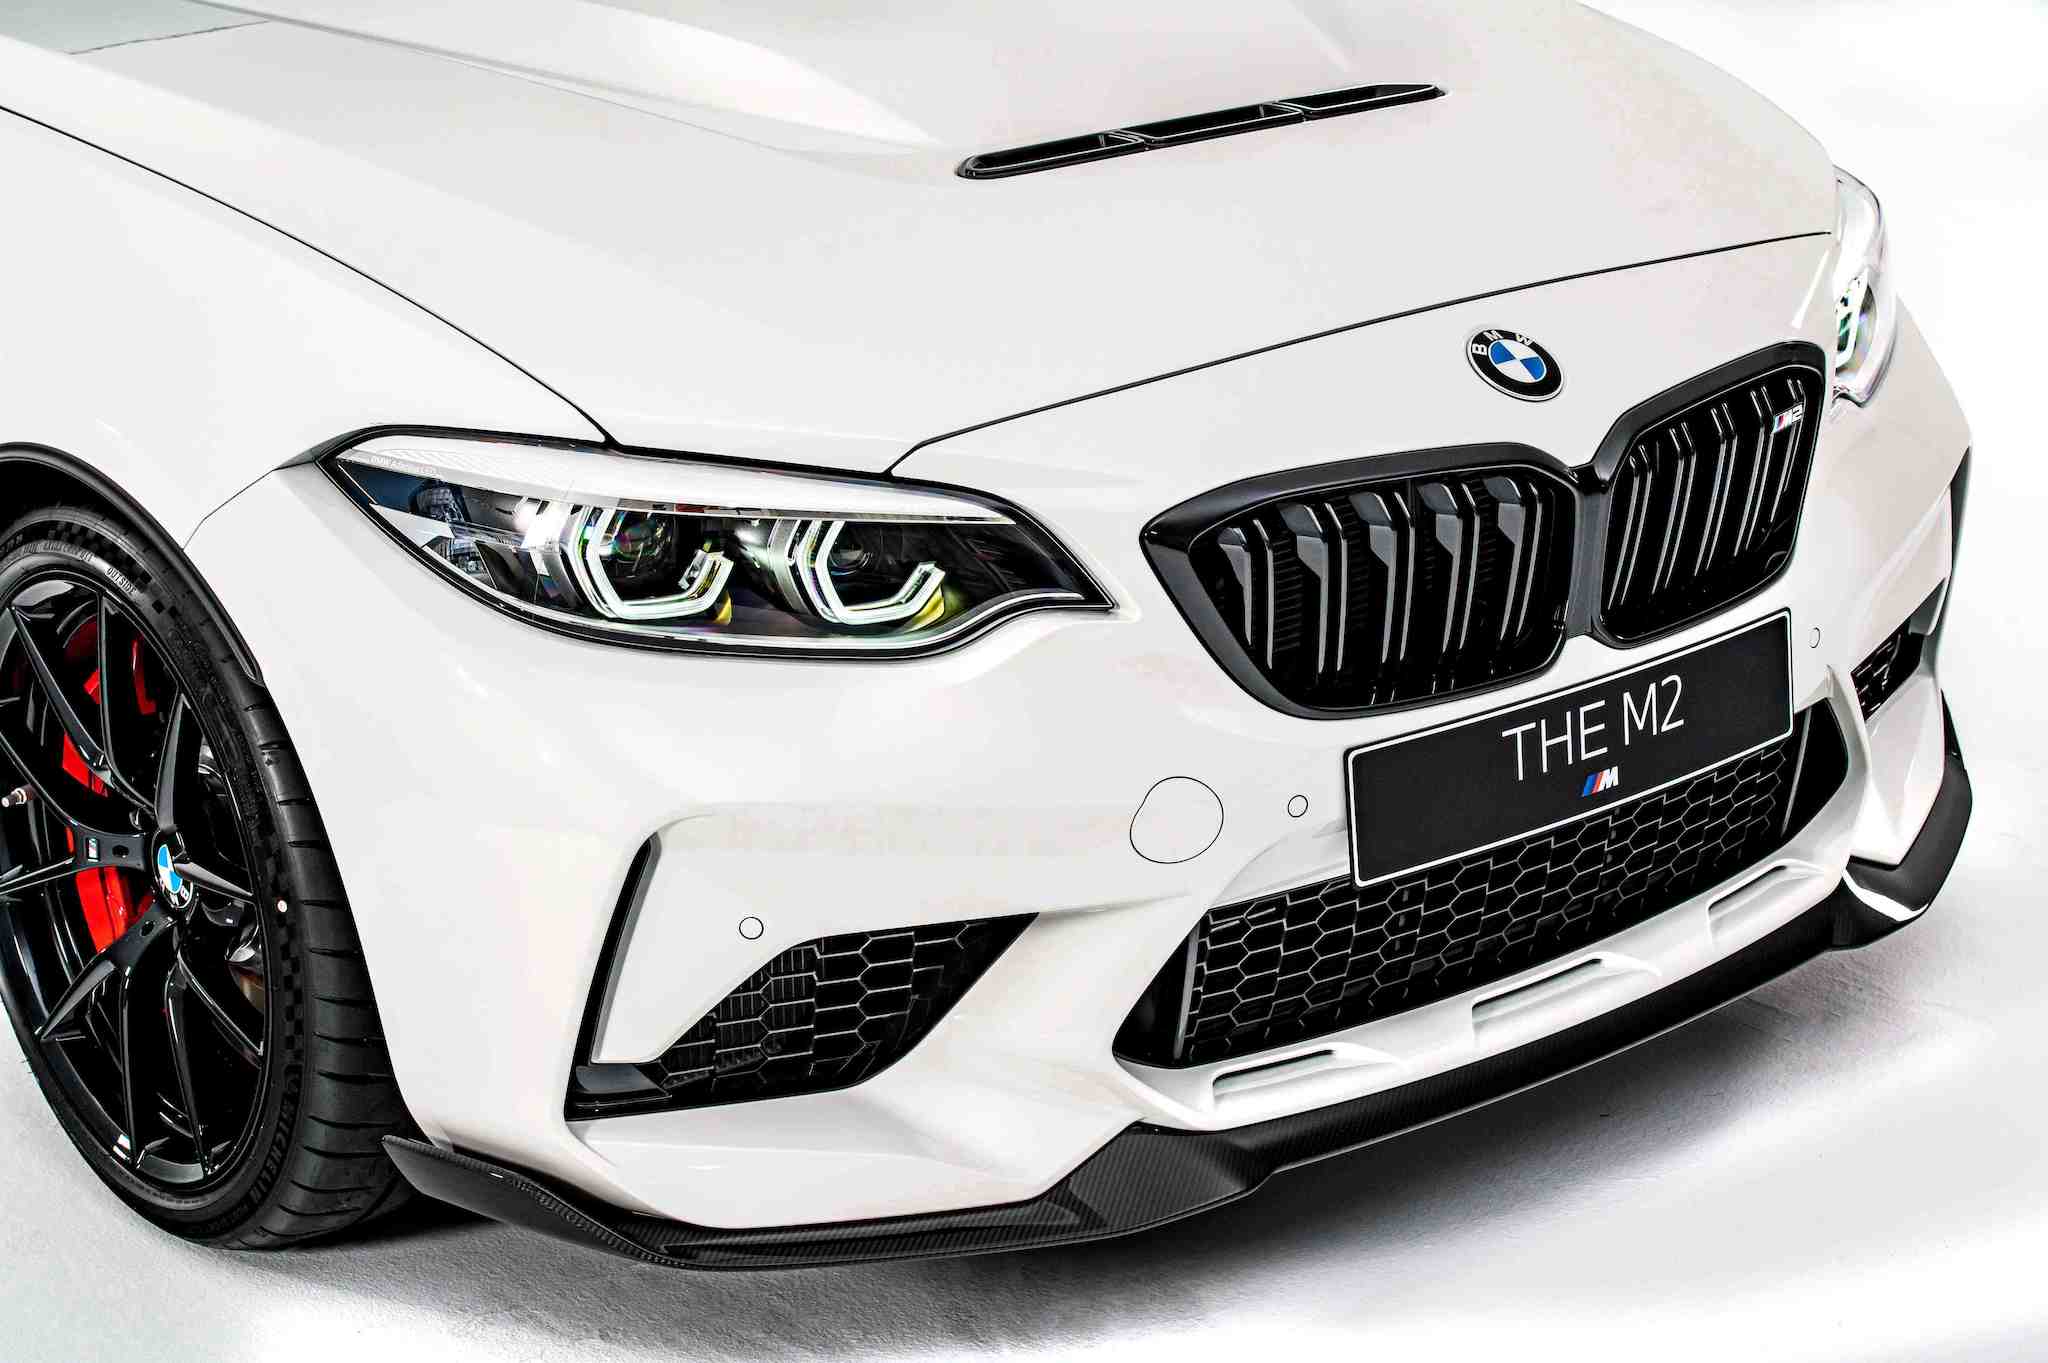 全新 BMW M2 CS 採用大量 CFRP 碳纖維複合材質，減少 50% 重量的碳纖維引擎蓋除了輕量化設計更增添了中央進氣口，為引擎提供更充足的散熱冷卻效果。